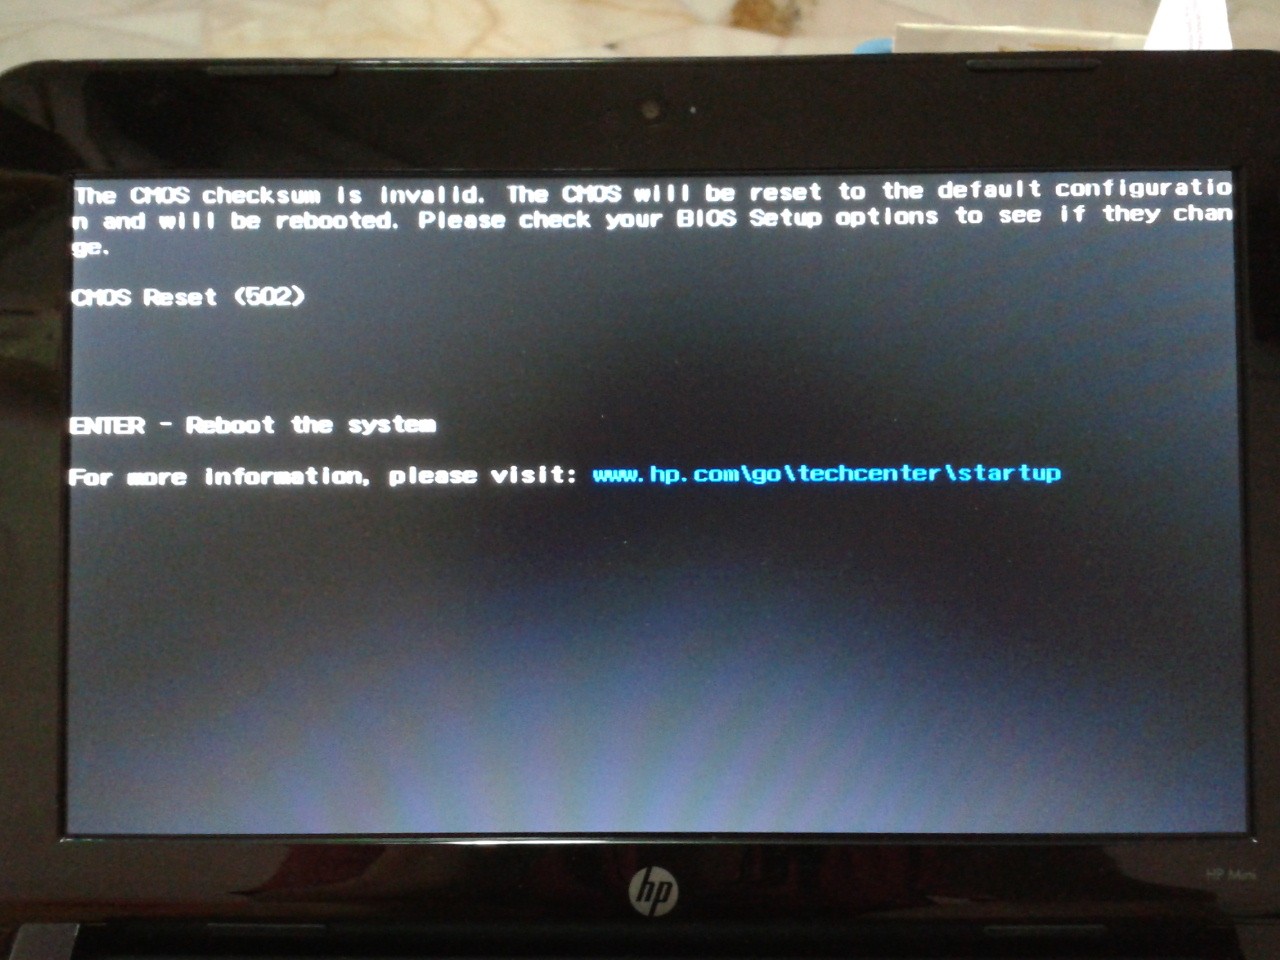 Im getting CMOS reset (17) error code when restarts my lapt